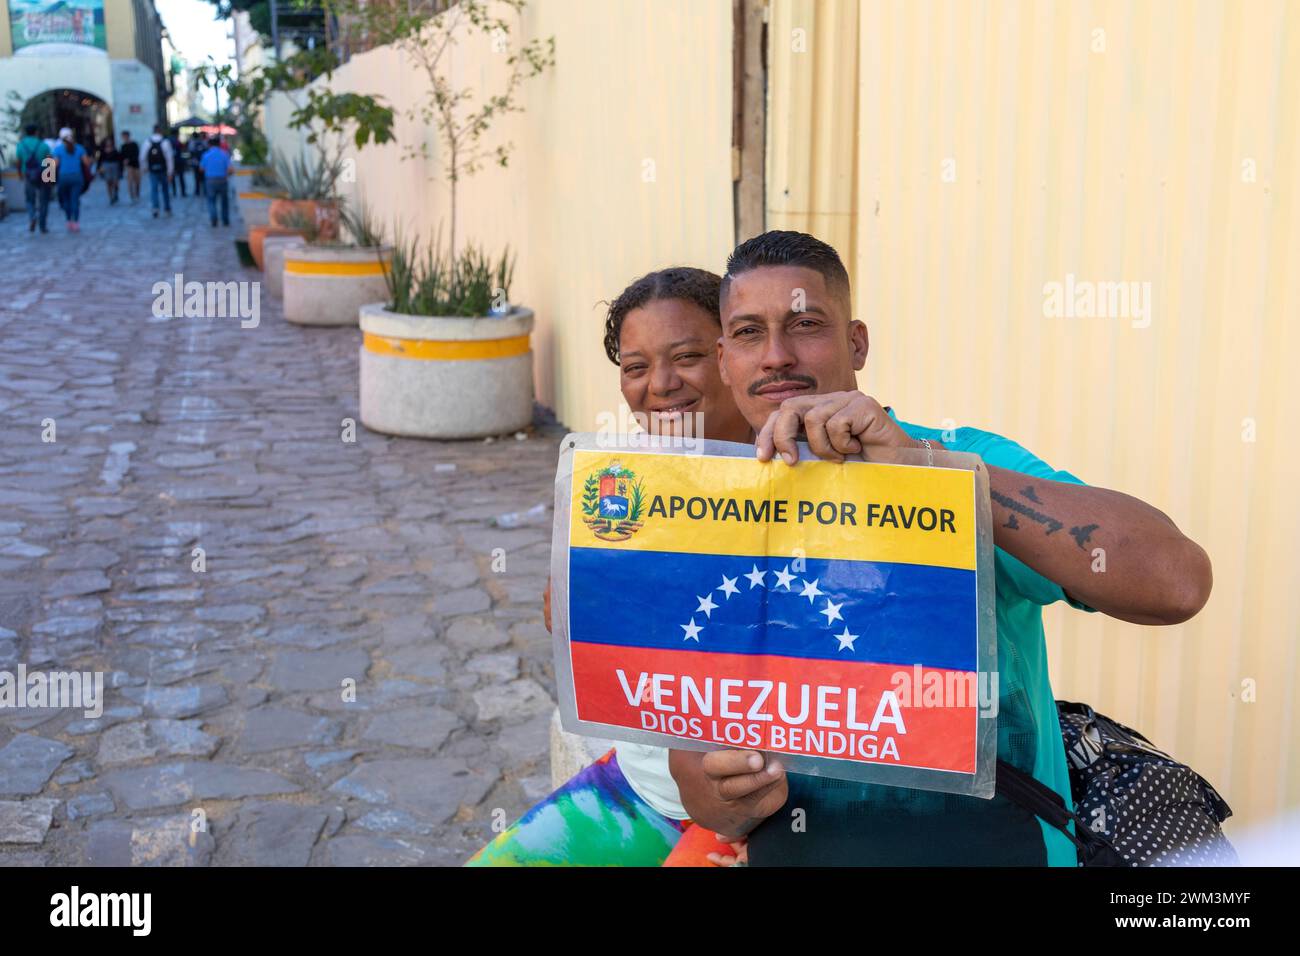 Oaxaca, Mexique - Un homme et une femme qui tentent de se rendre du Venezuela aux États-Unis tiennent une pancarte demandant de l'aide. Banque D'Images